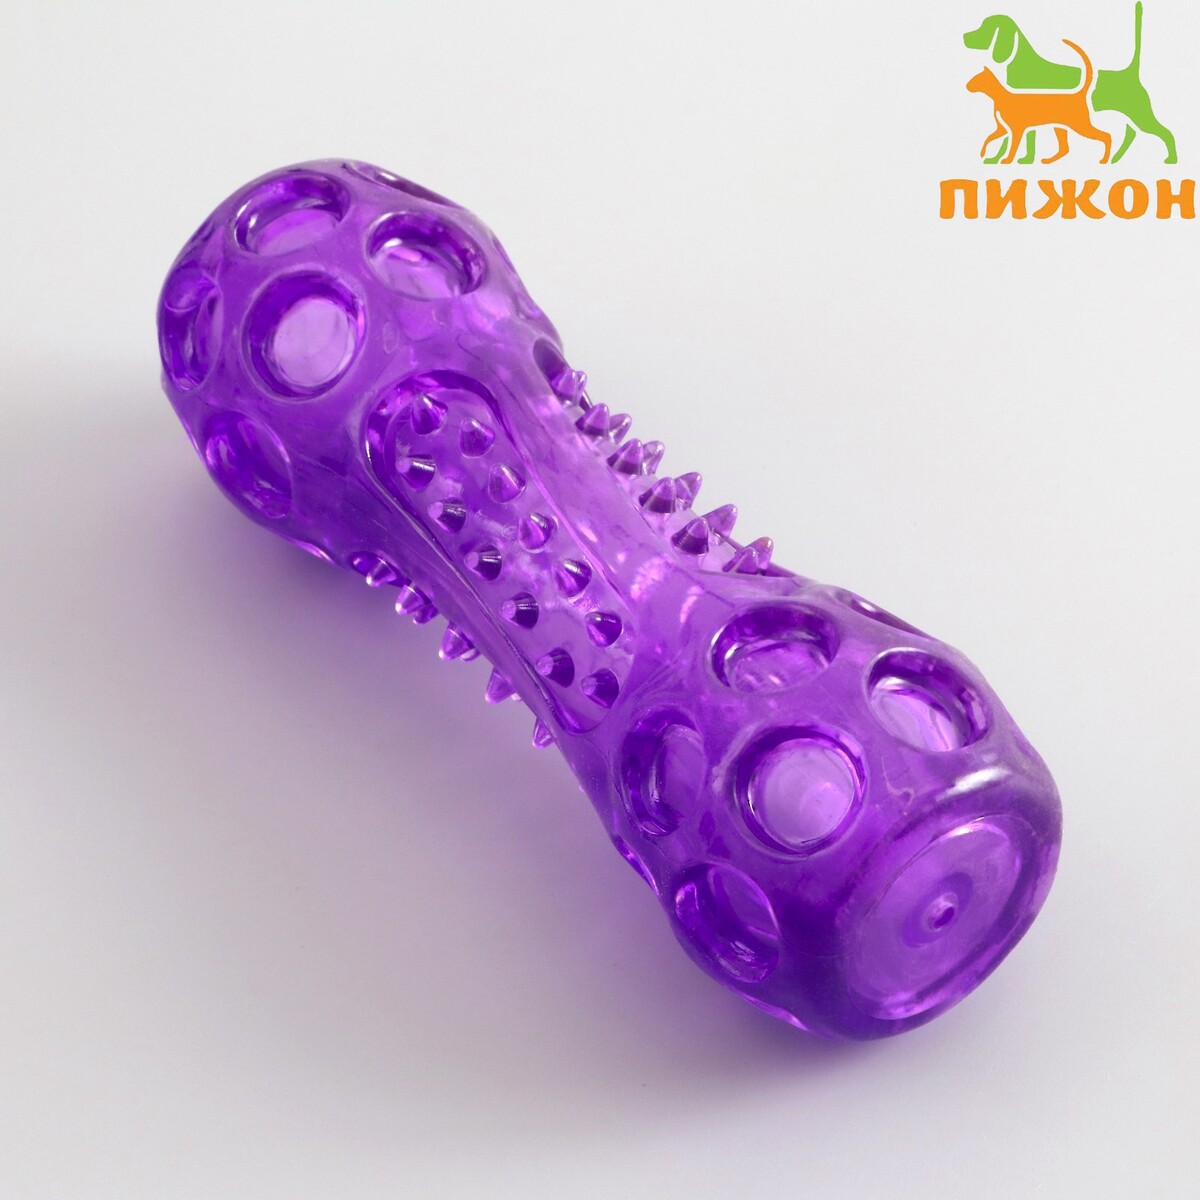 Игрушка-палка из термопластичной резины с утопленной пищалкой, фиолетовая гимнастическая палка 2 кг the body bar bs bb02kg